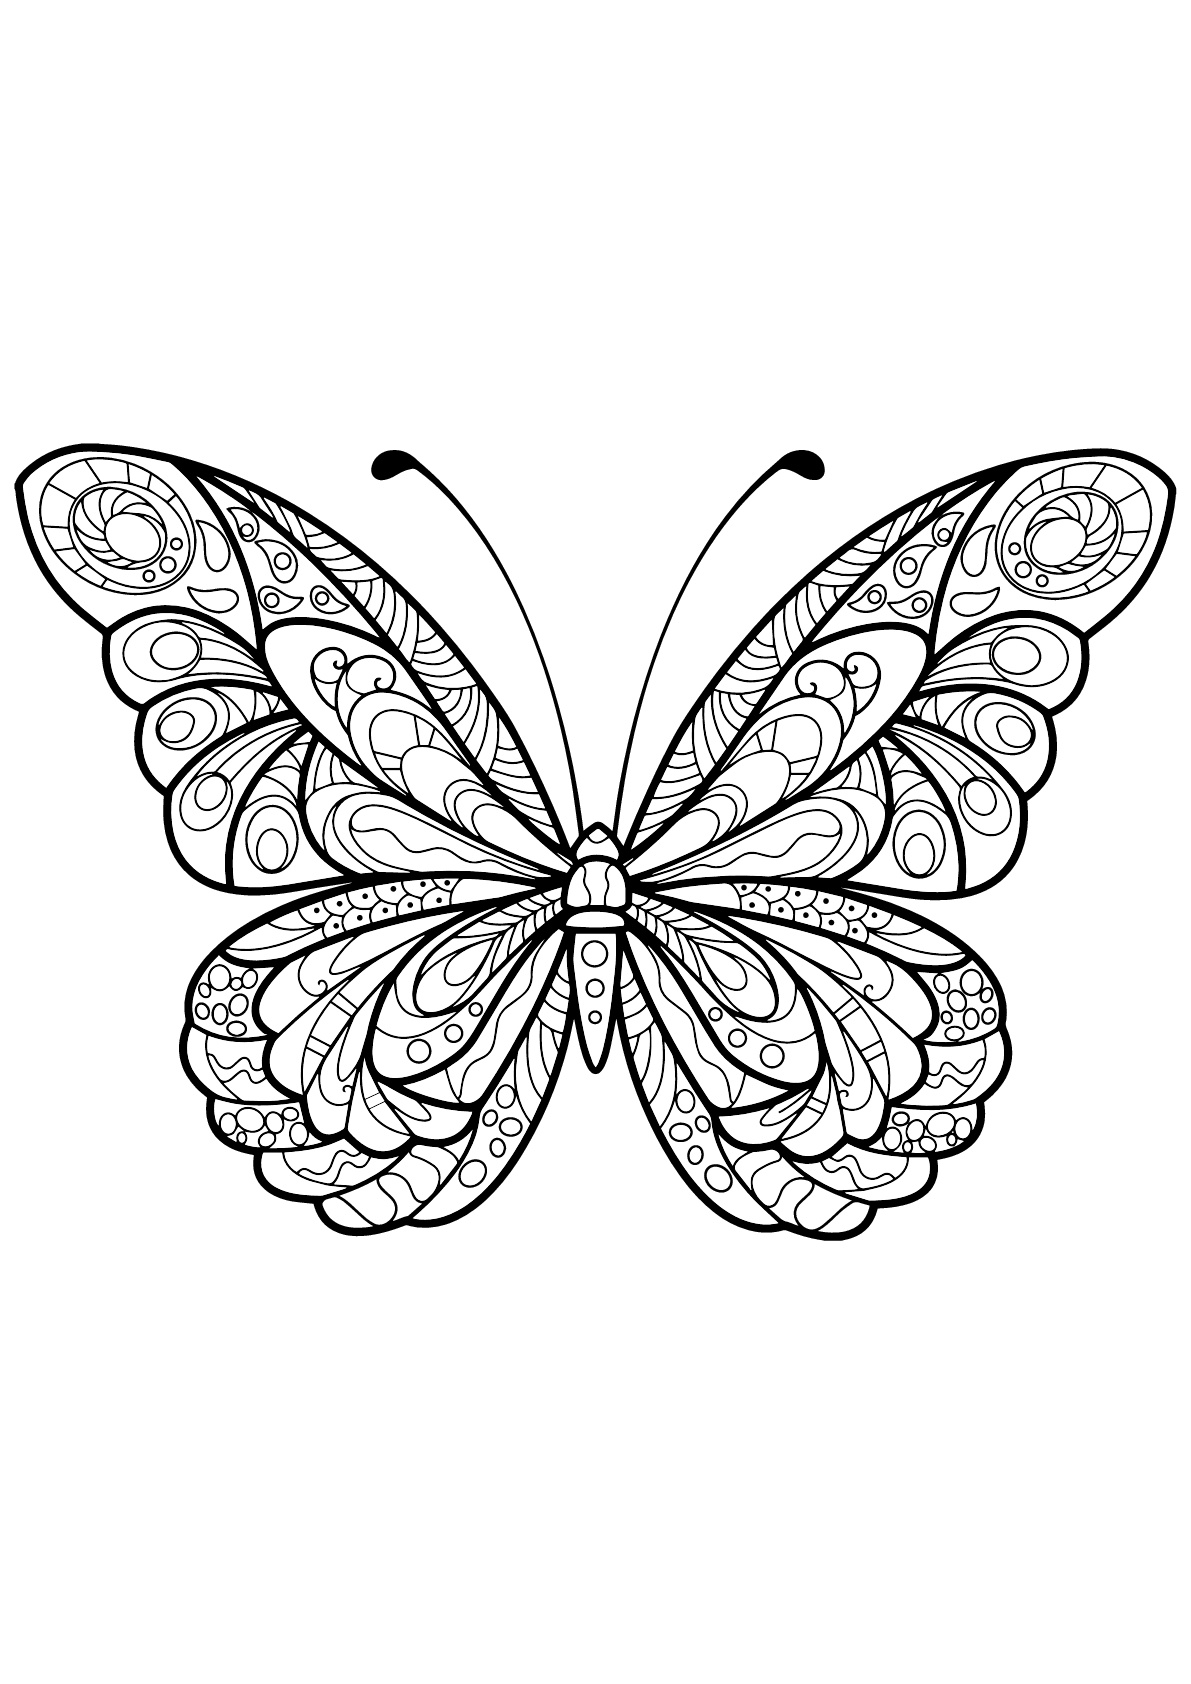 Mariposa con bellos e intrincados dibujos - 5